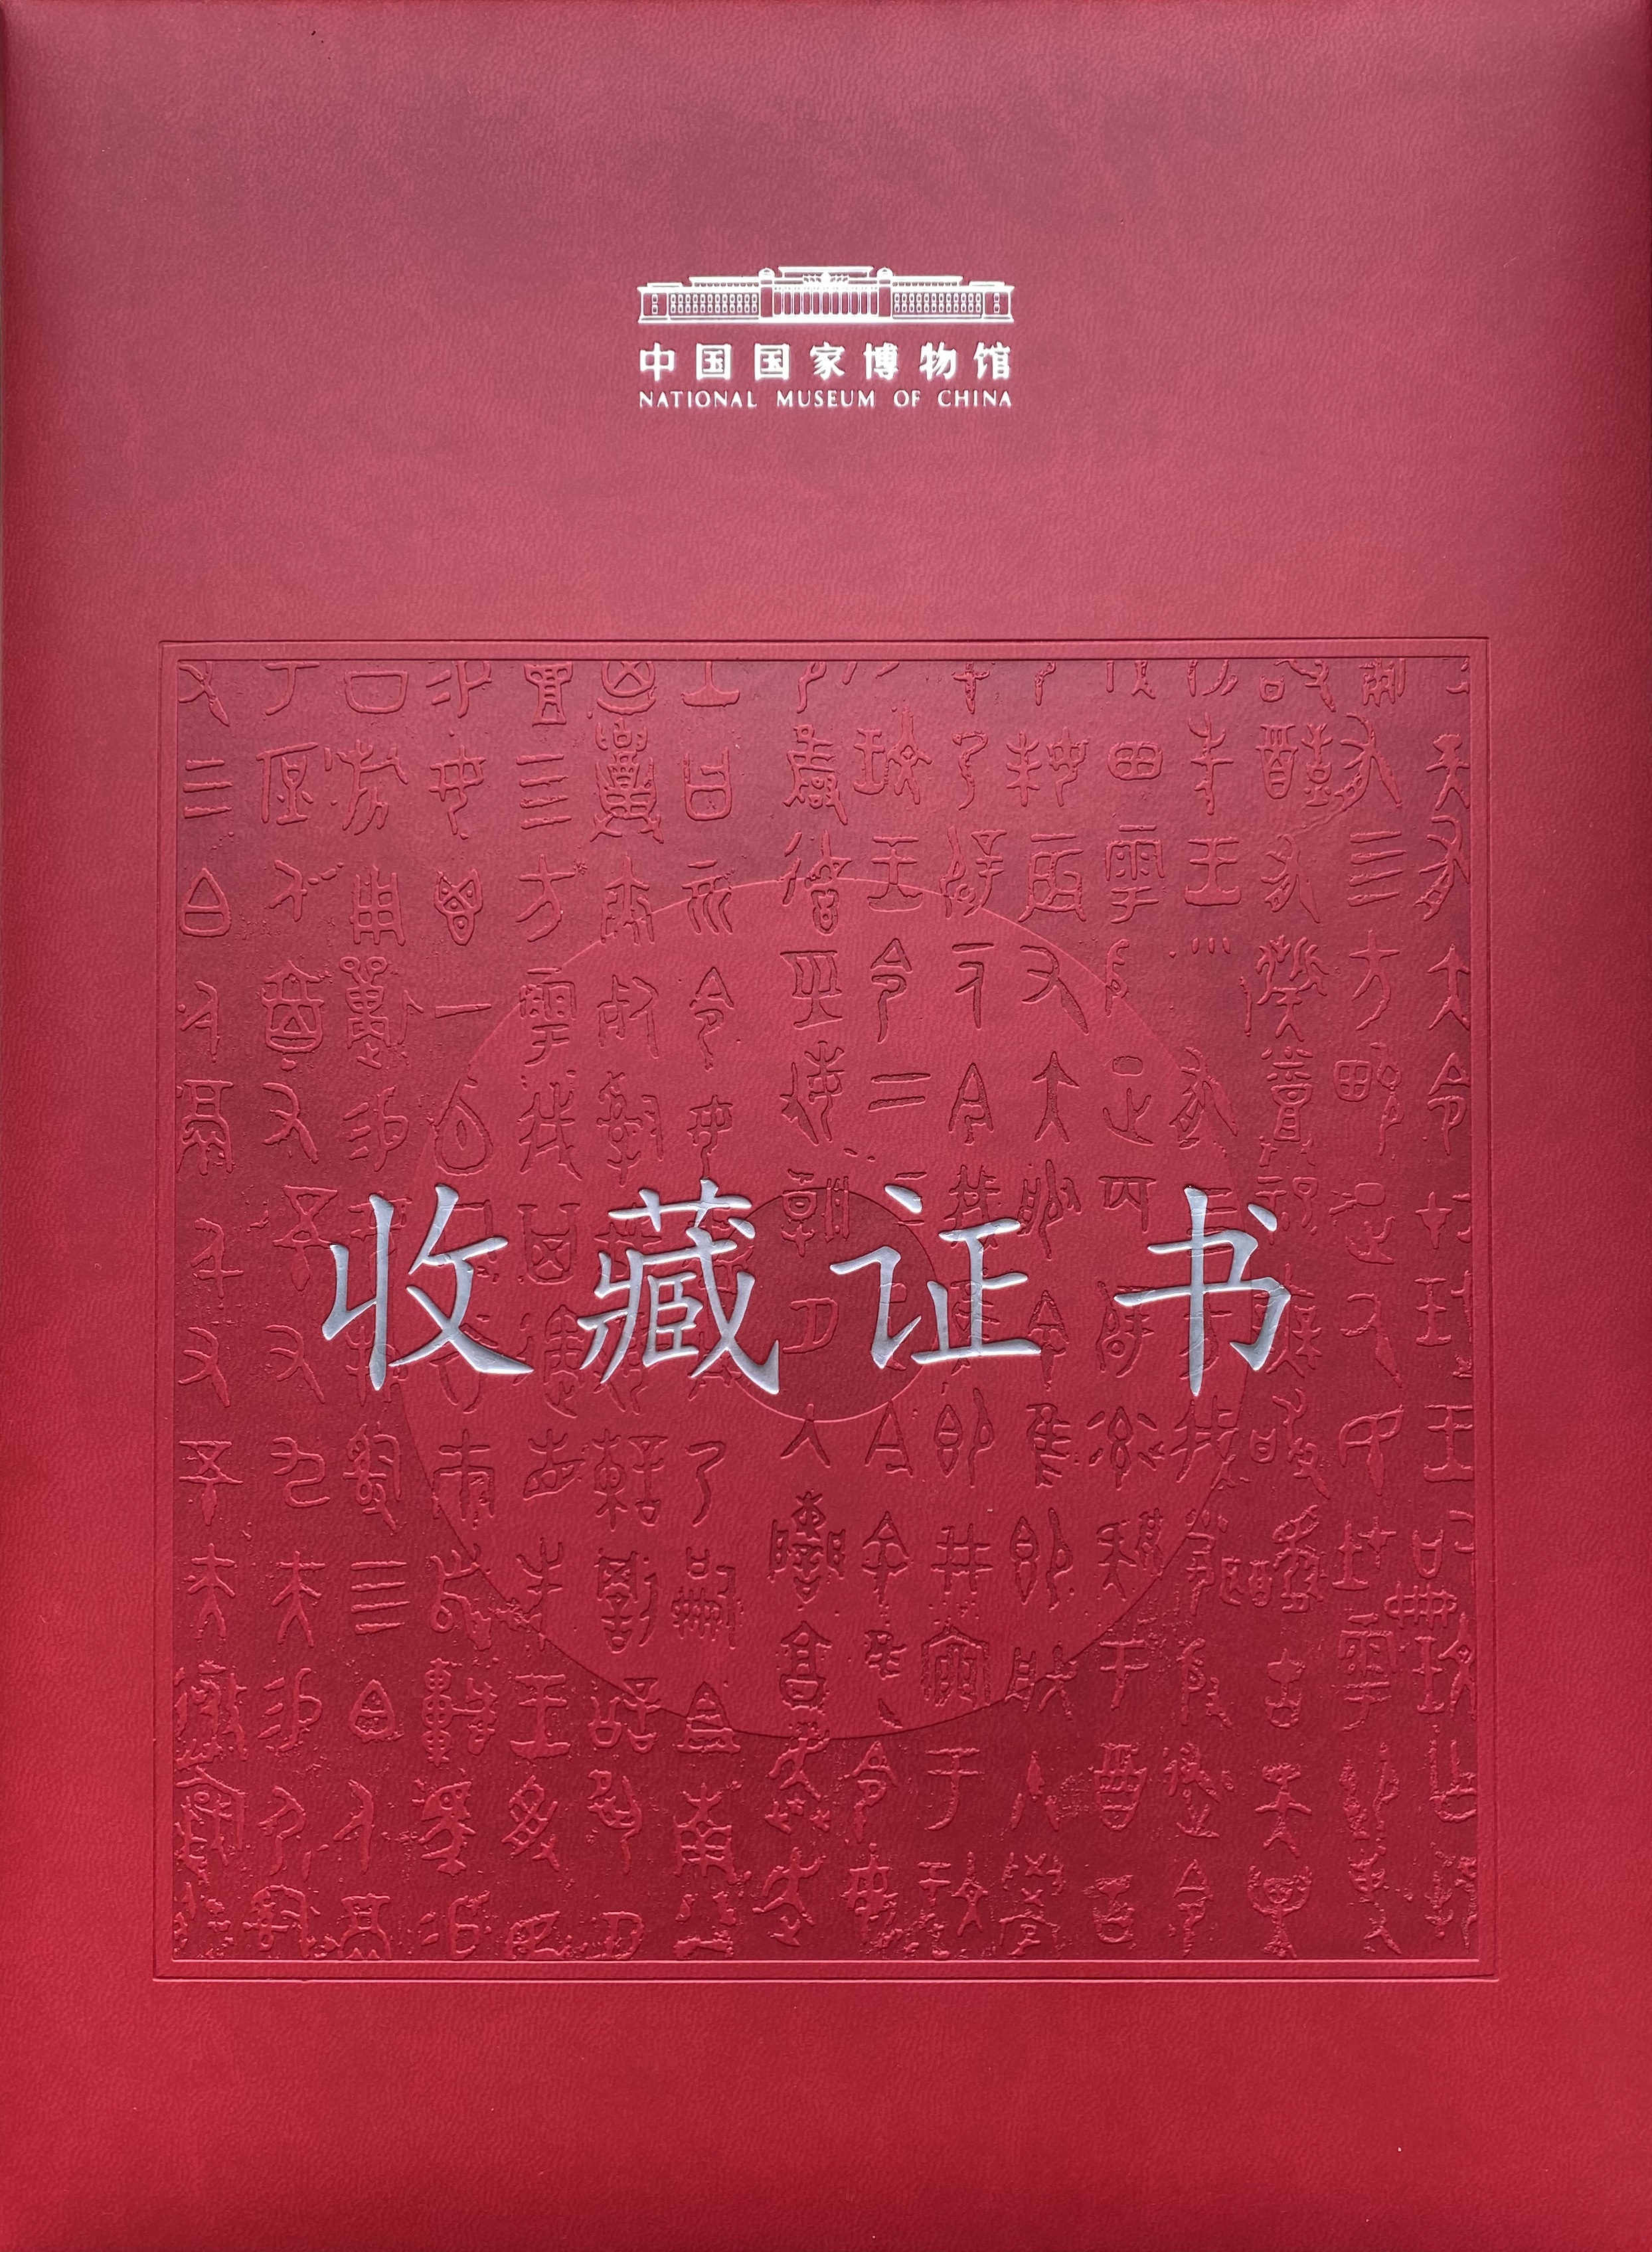 中國國家博物館頒發給大文集團的收藏證書。攝影：郜梓洲